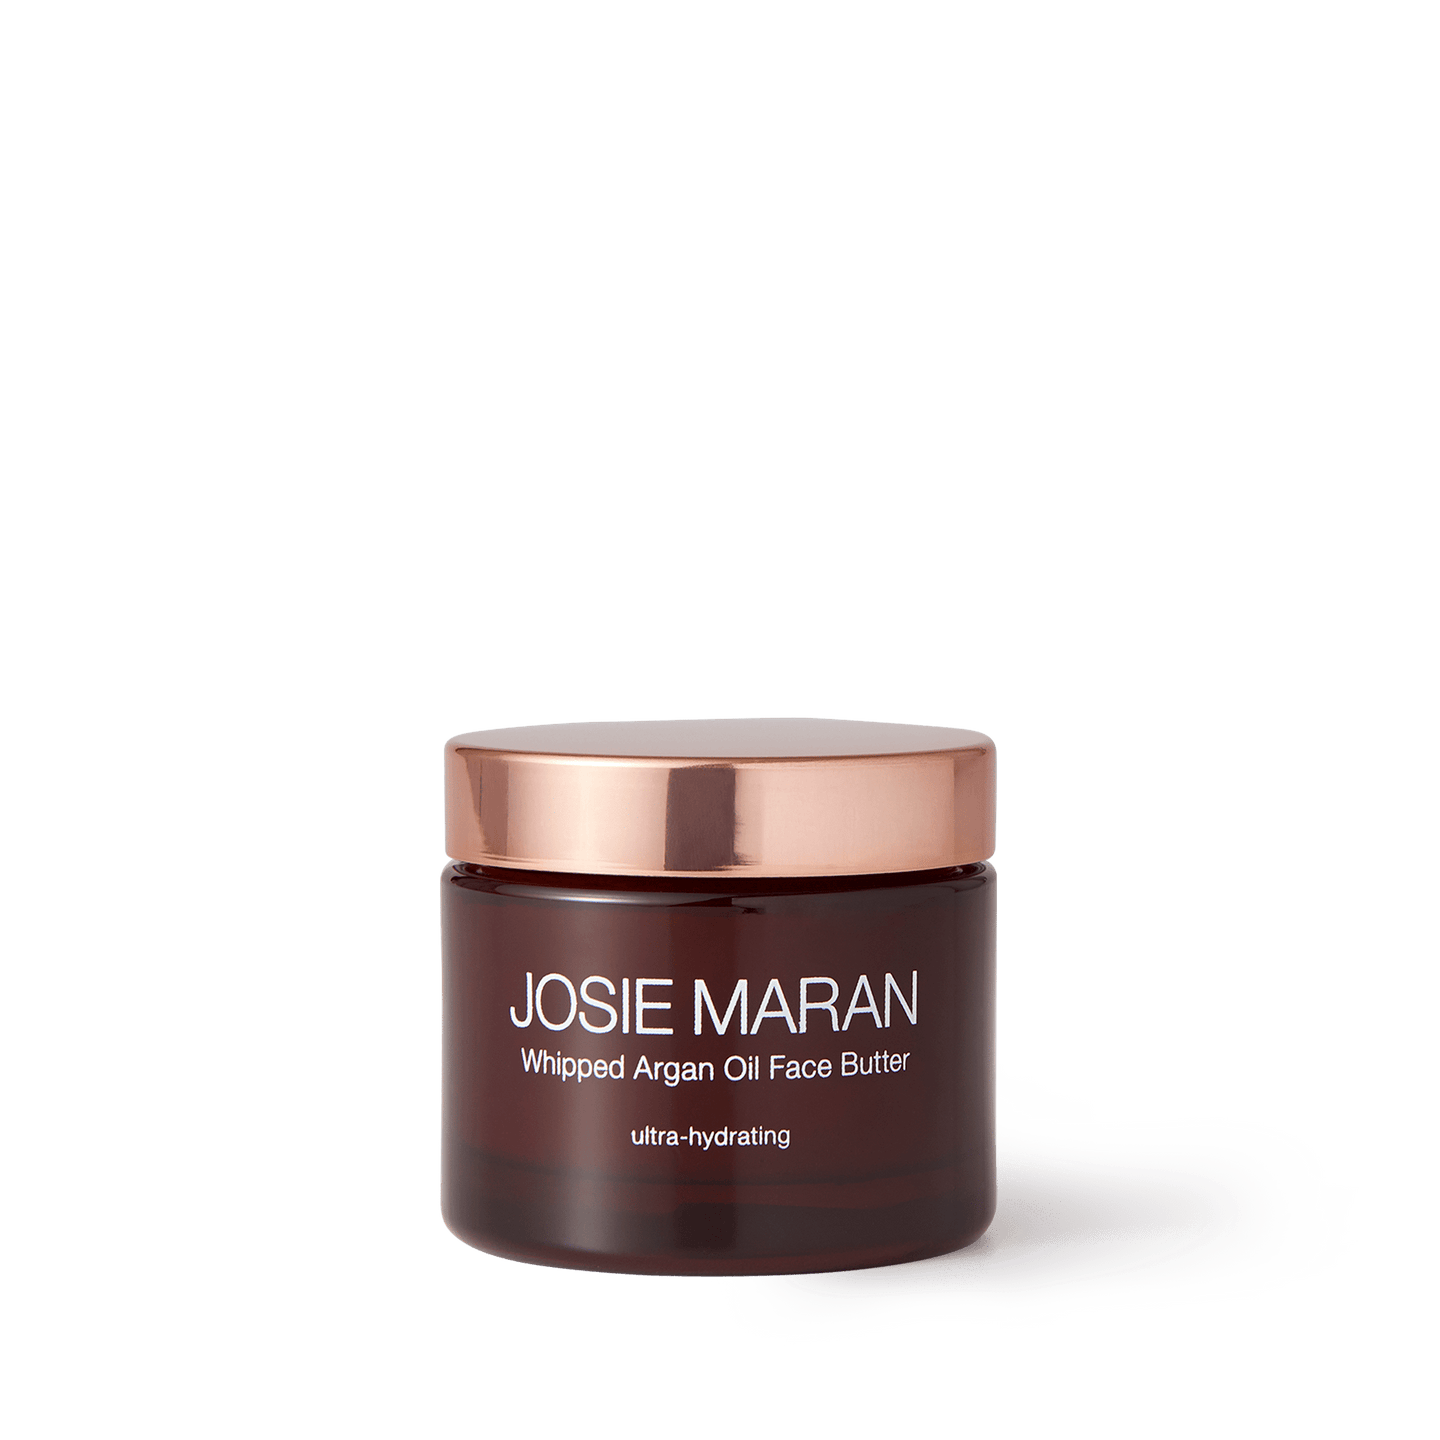 Josie Maran Whipped Argan Oil Face Butter - 